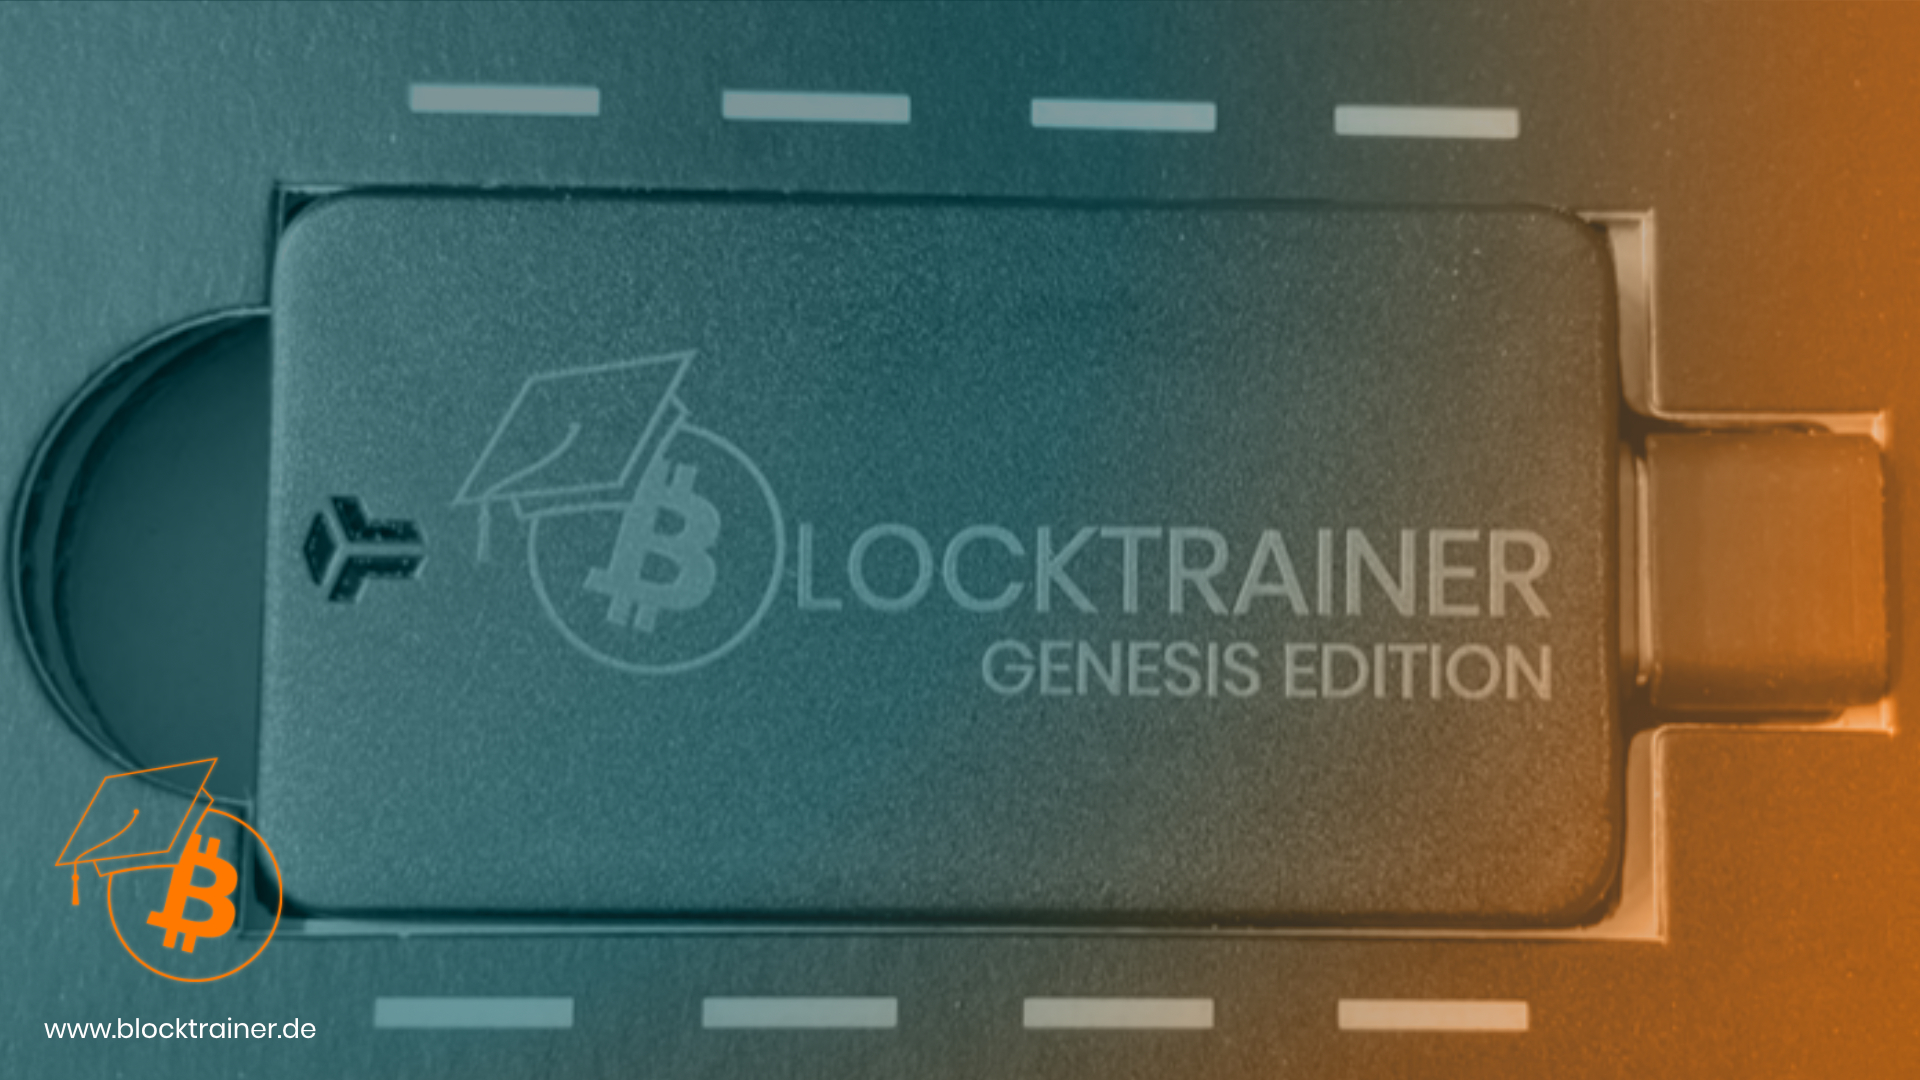 Blocktrainer BitBox02